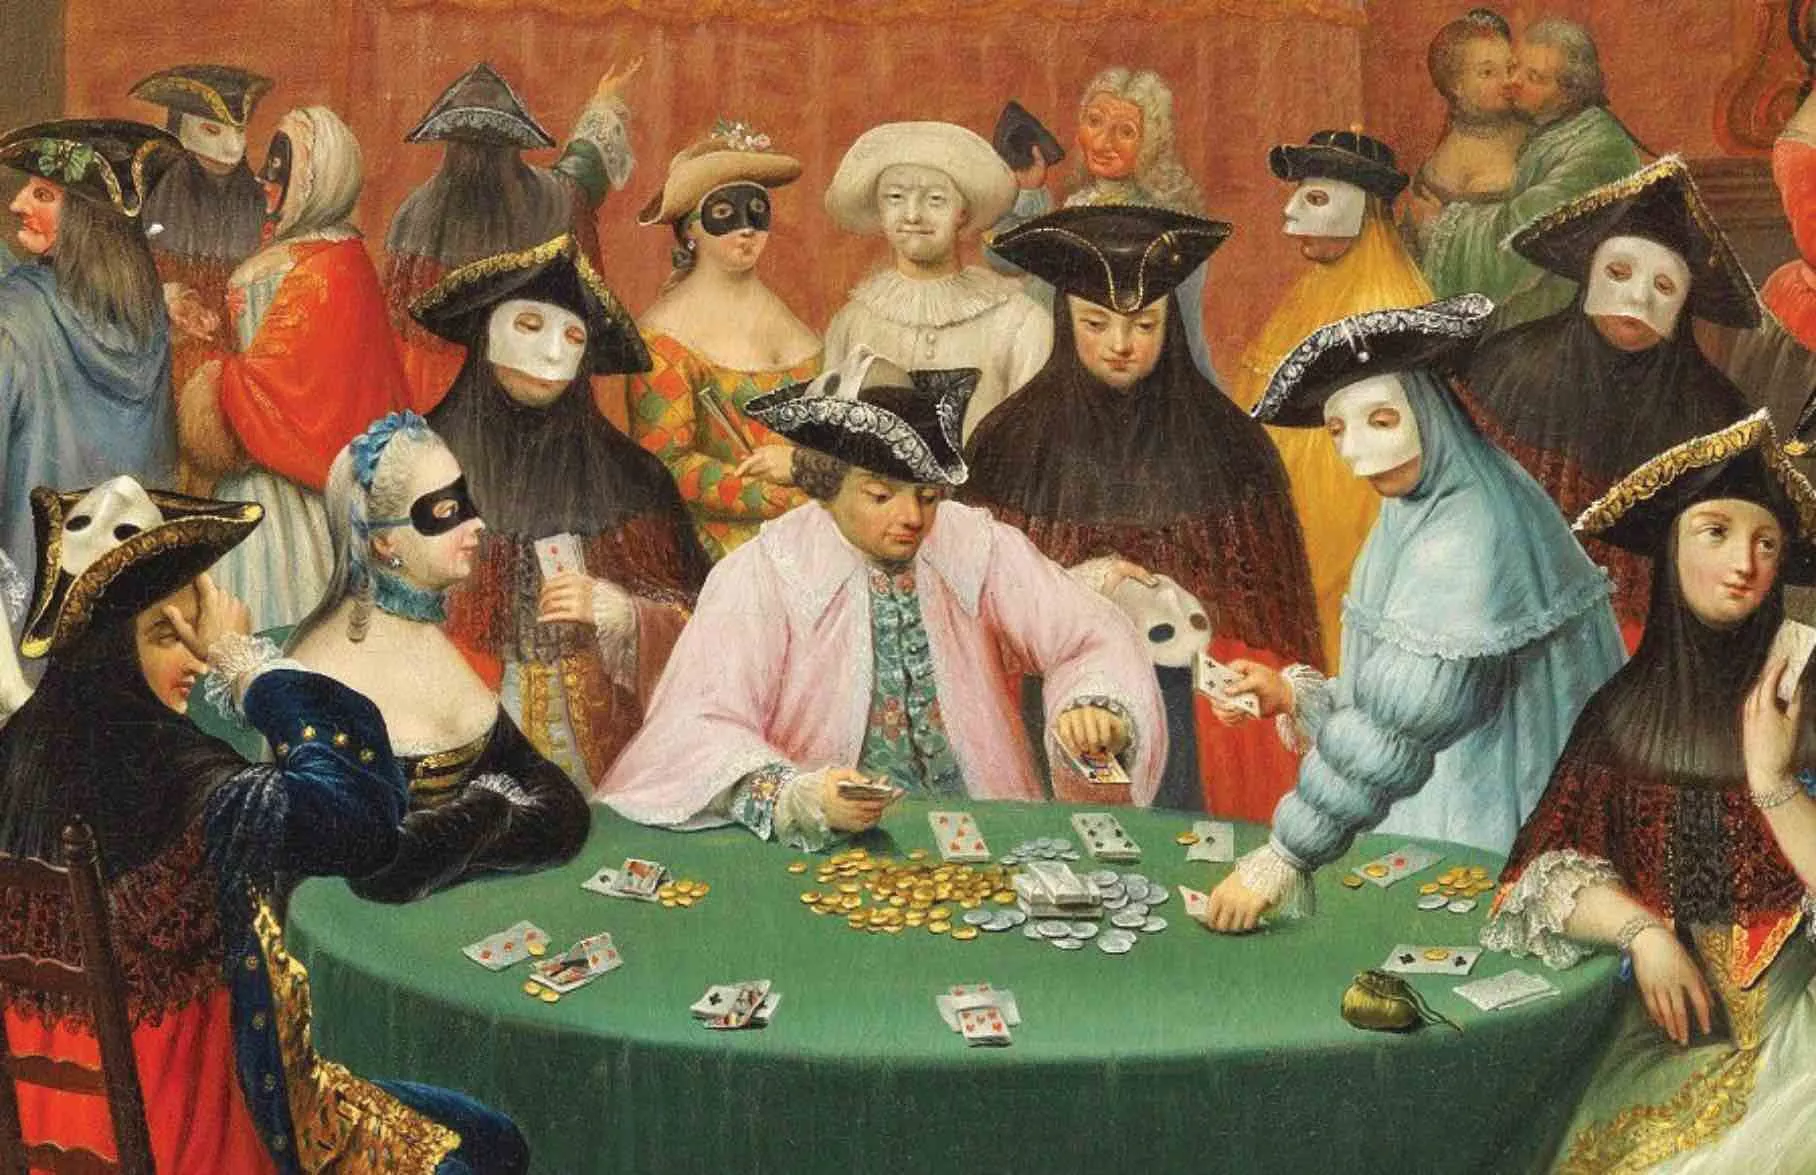 El primer casino d’Europa, en aquest quadre pintat per Giuseppe de Gobbis, va obrir a Venècia el 1638. Es deia Il Ridotto i era en una ala del Palau Dandolo